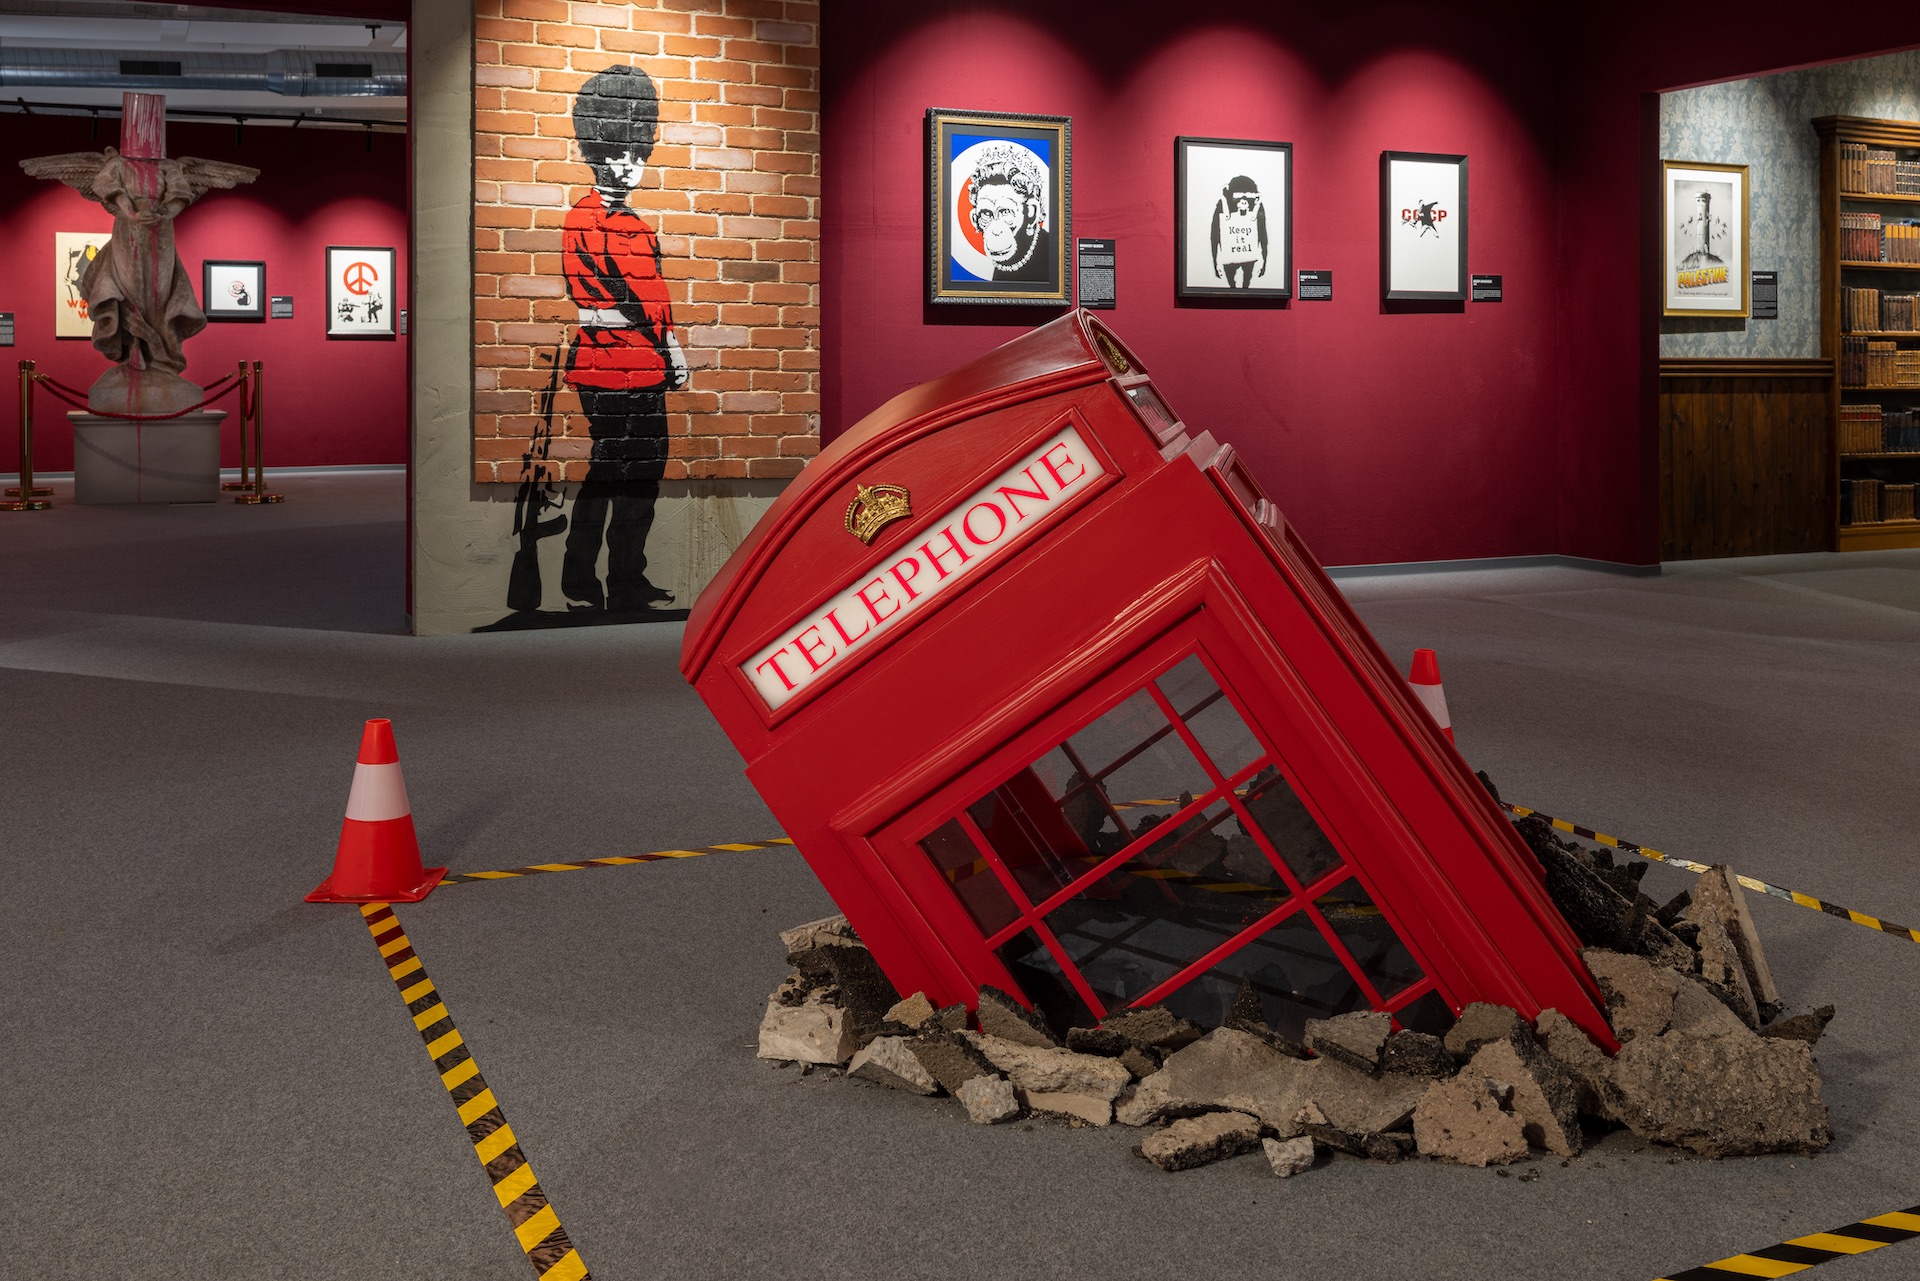 The Mystery of Banksy: Zu sehen sind teile der Ausstelung, z.B. im Vordergrund: eine halb in den Boden gerammte, rote, englische Telefonzelle.